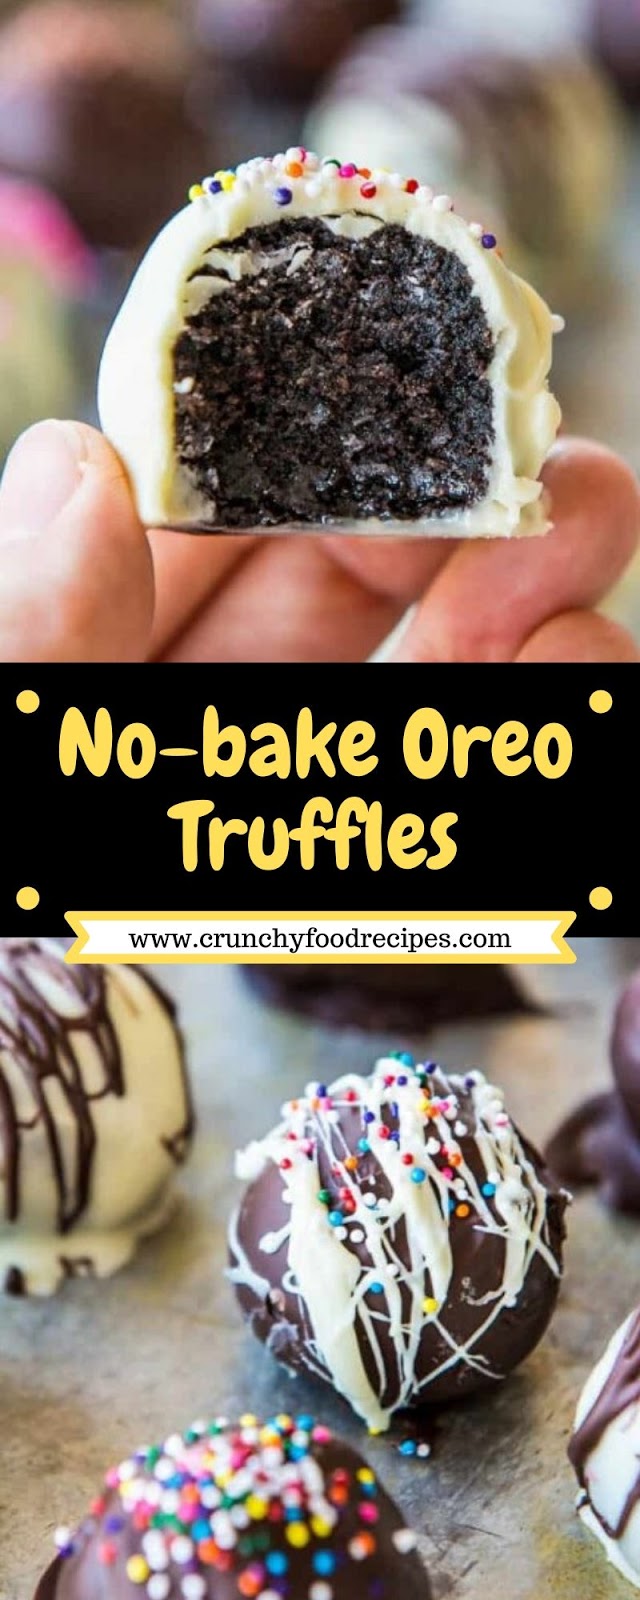 No-bake Oreo Truffles